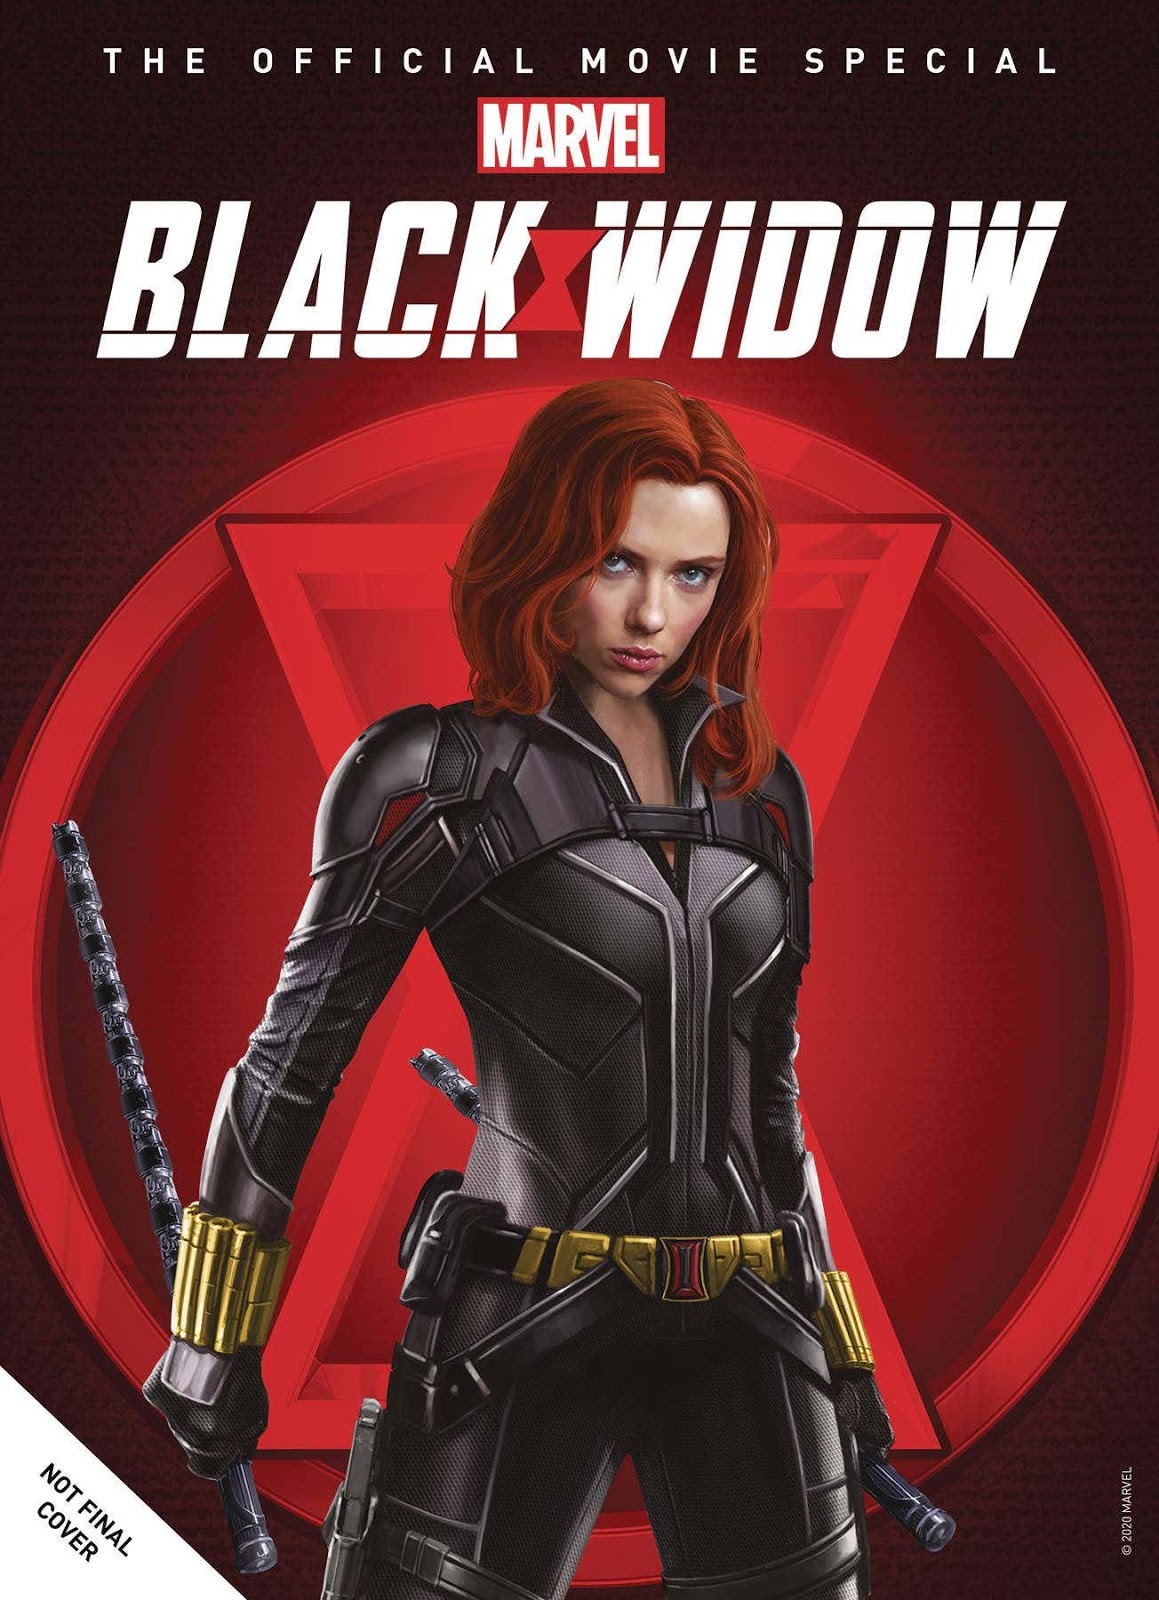 SNEAK PEEK Marvel's "Black Widow" Summer 2021